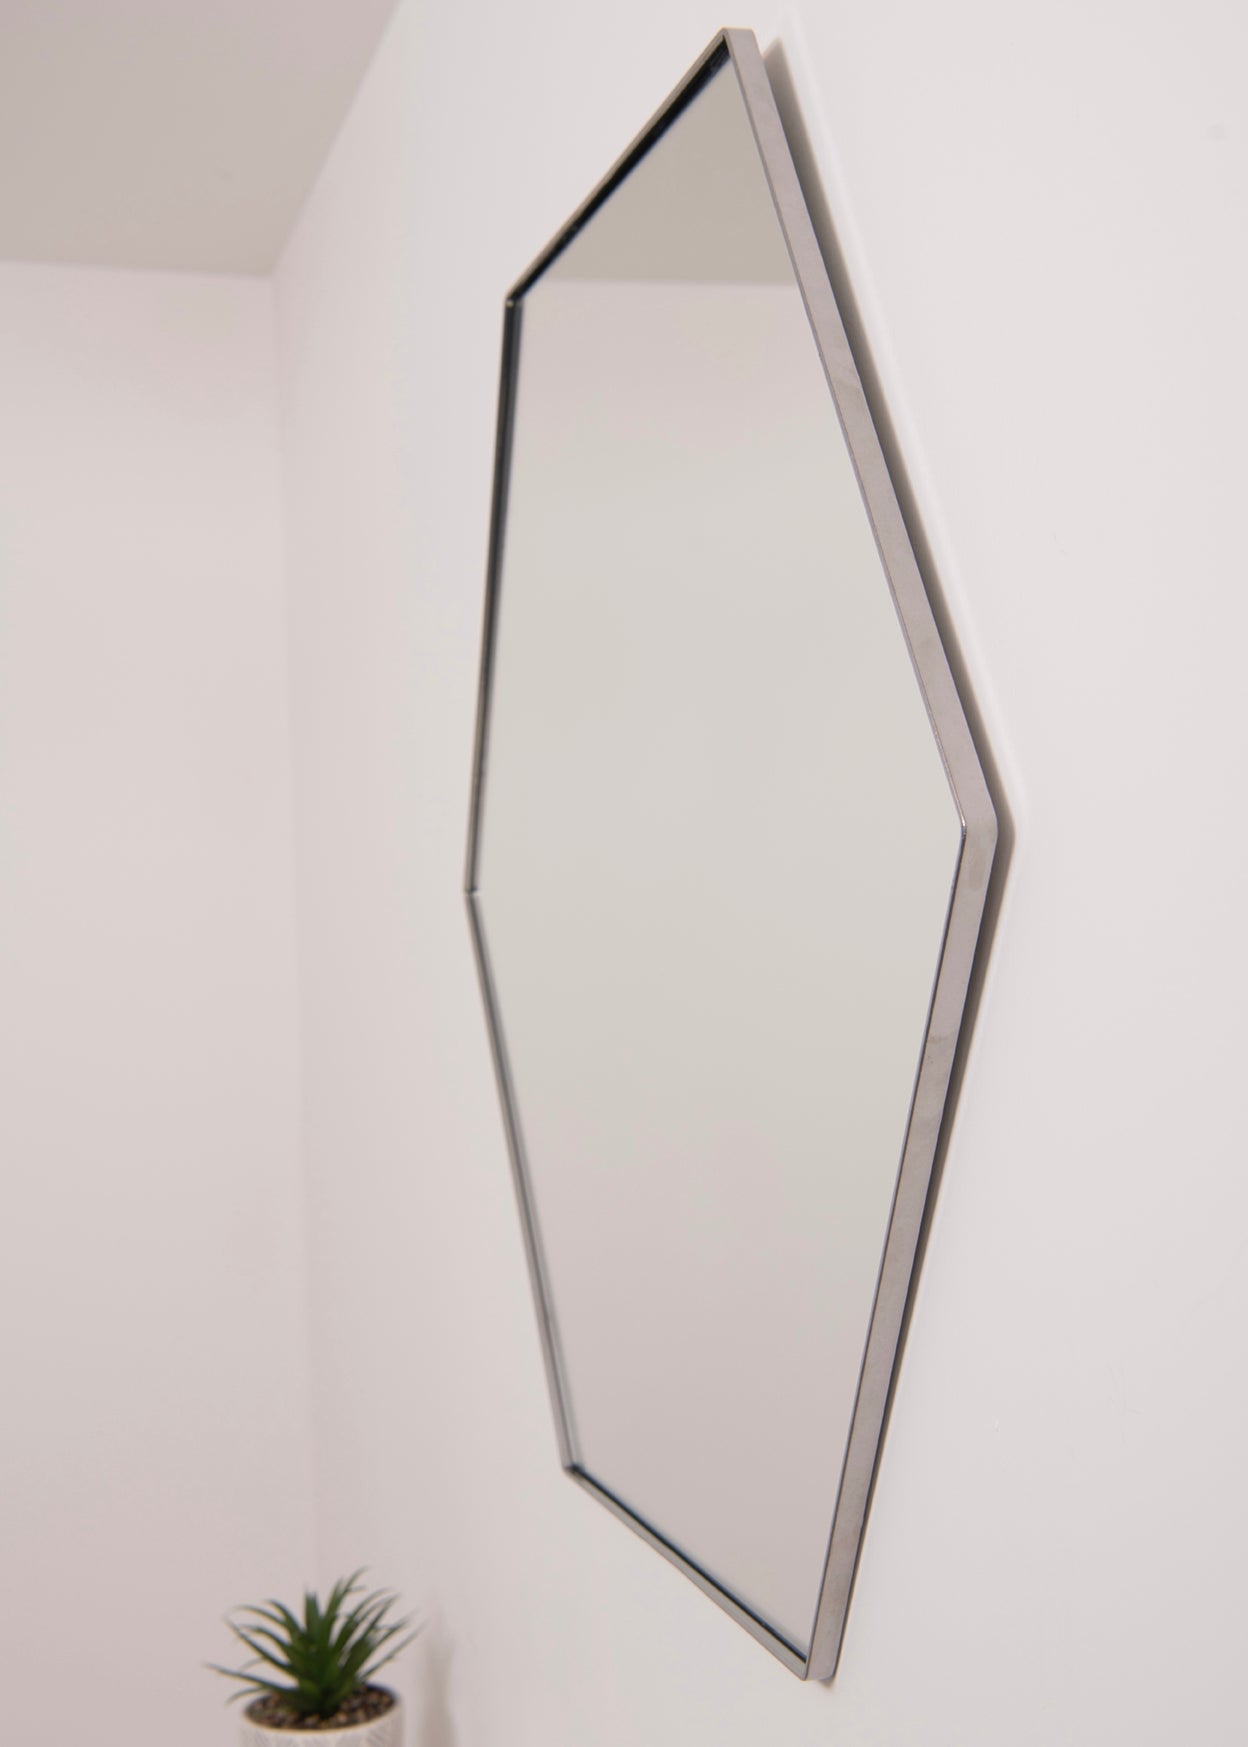 Geometric Hexagon Wall Mirror - RESS Furniture Ltd. Chrome